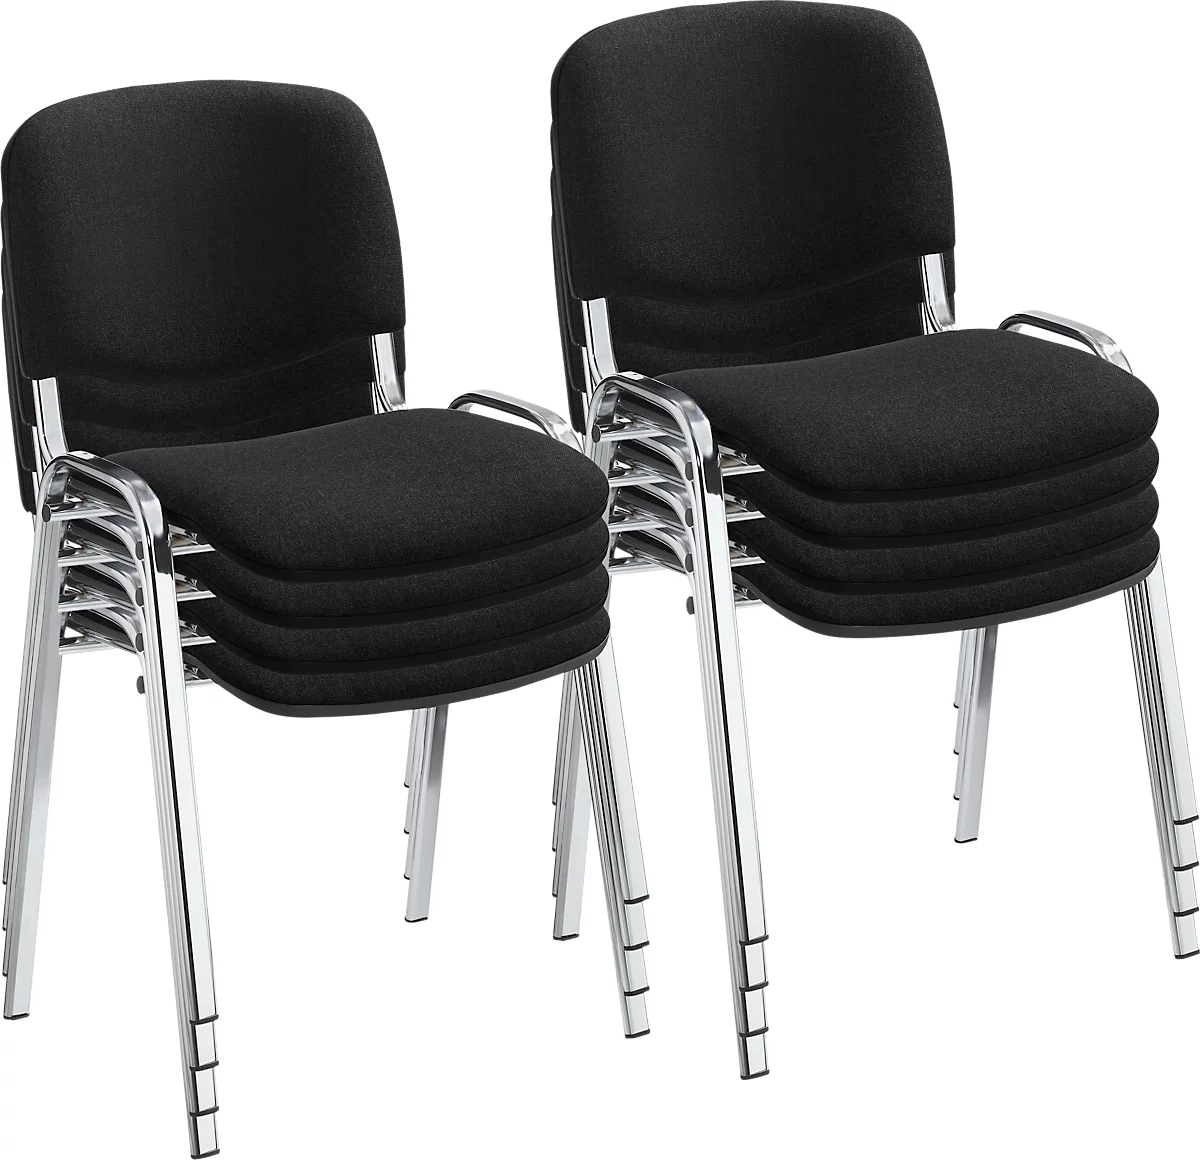 NowyStyl Set de chaises empilables ISO BASIC, sans accoudoirs, empilable jusqu'à 12 pièces, housse noire, piétement argent chromé, 8 pièces